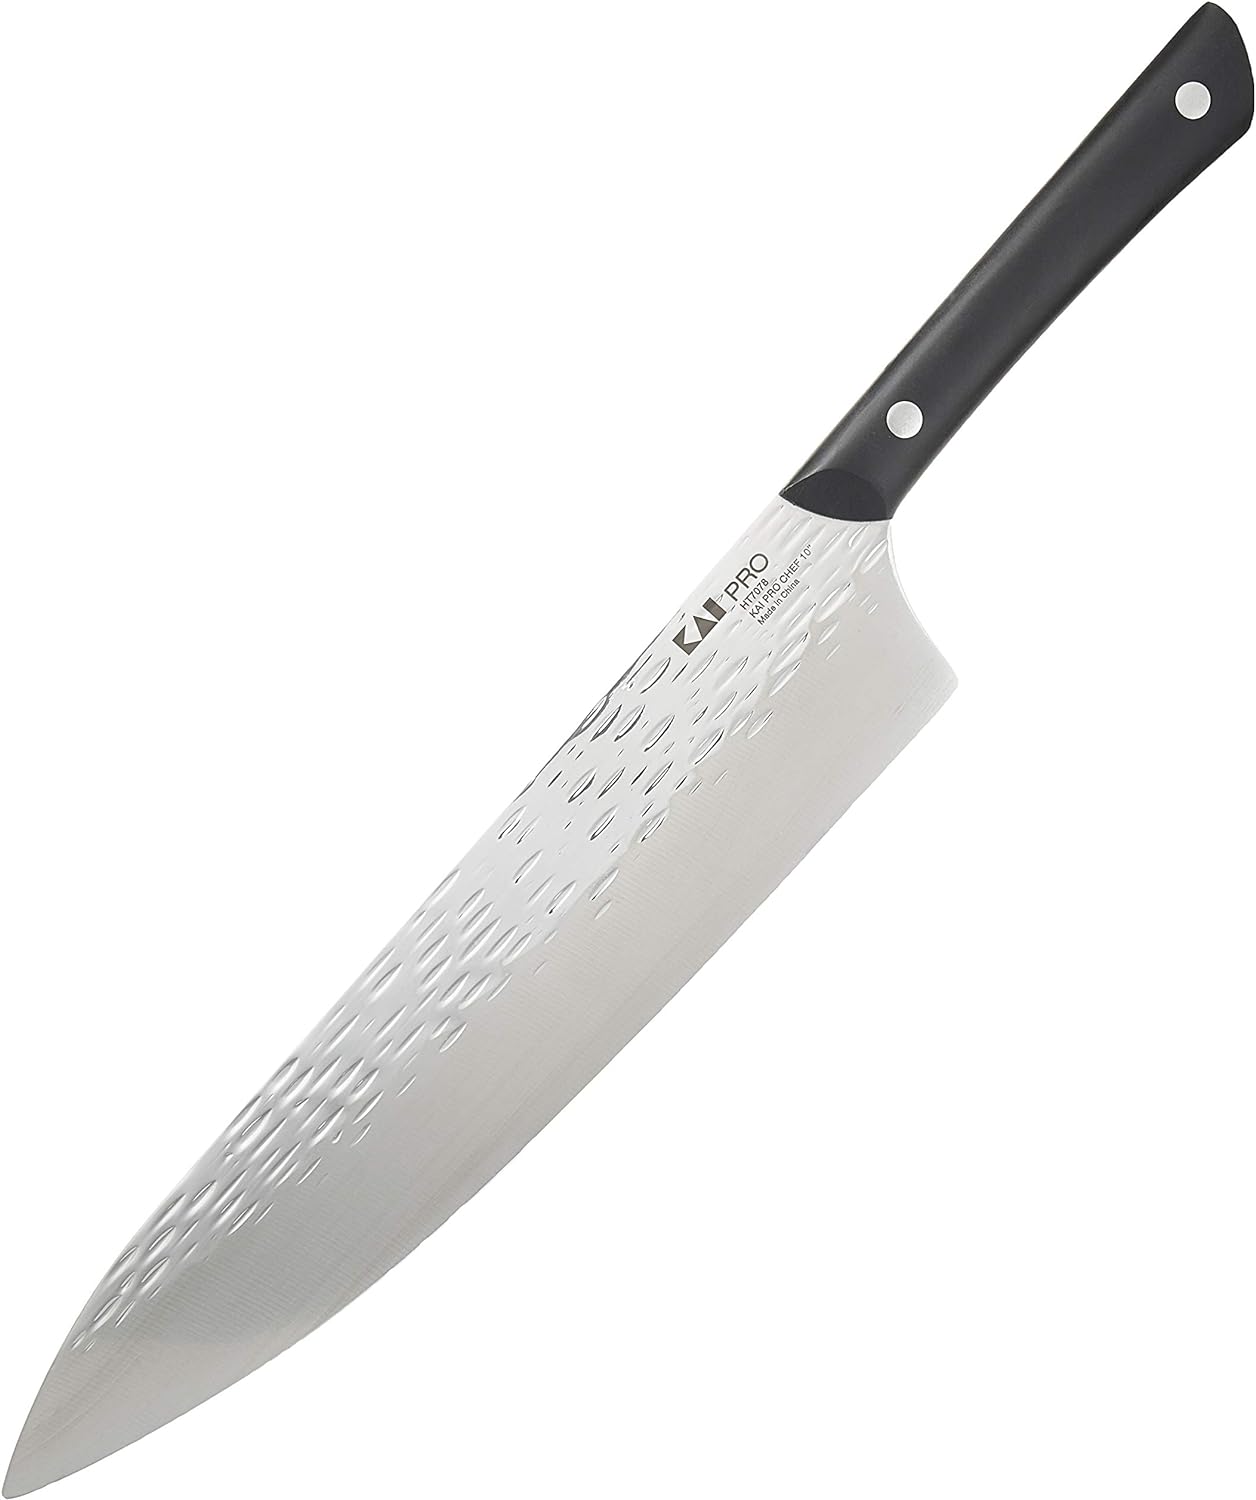 KD 10 inch Chef Knife Long Japanese Kitchen Knife Knife